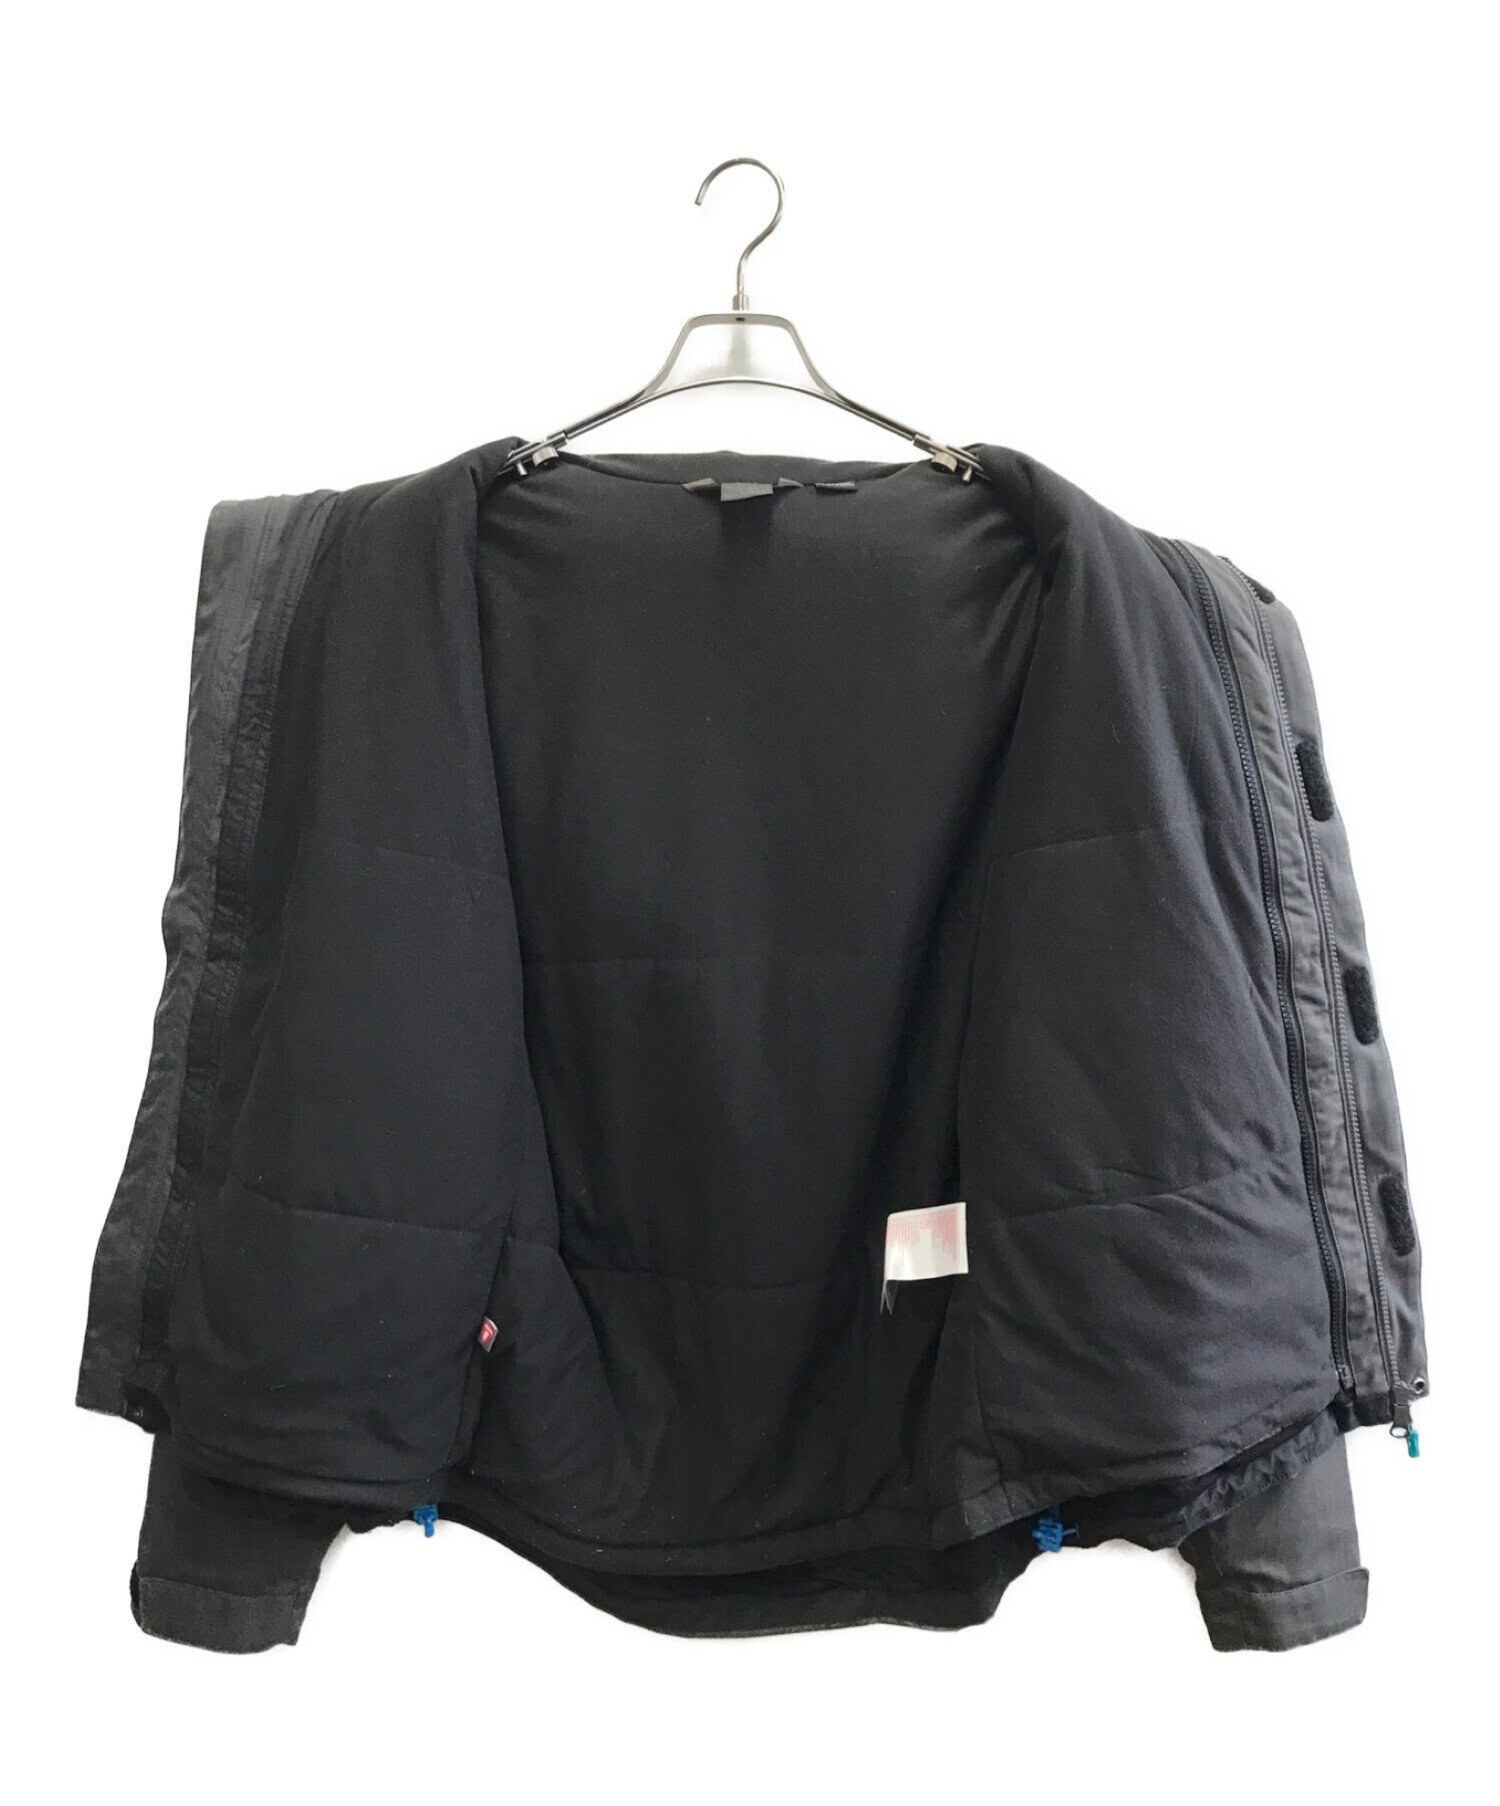 MILLET (ミレー) ポベダ3in1ジャケット ブラック サイズ:M